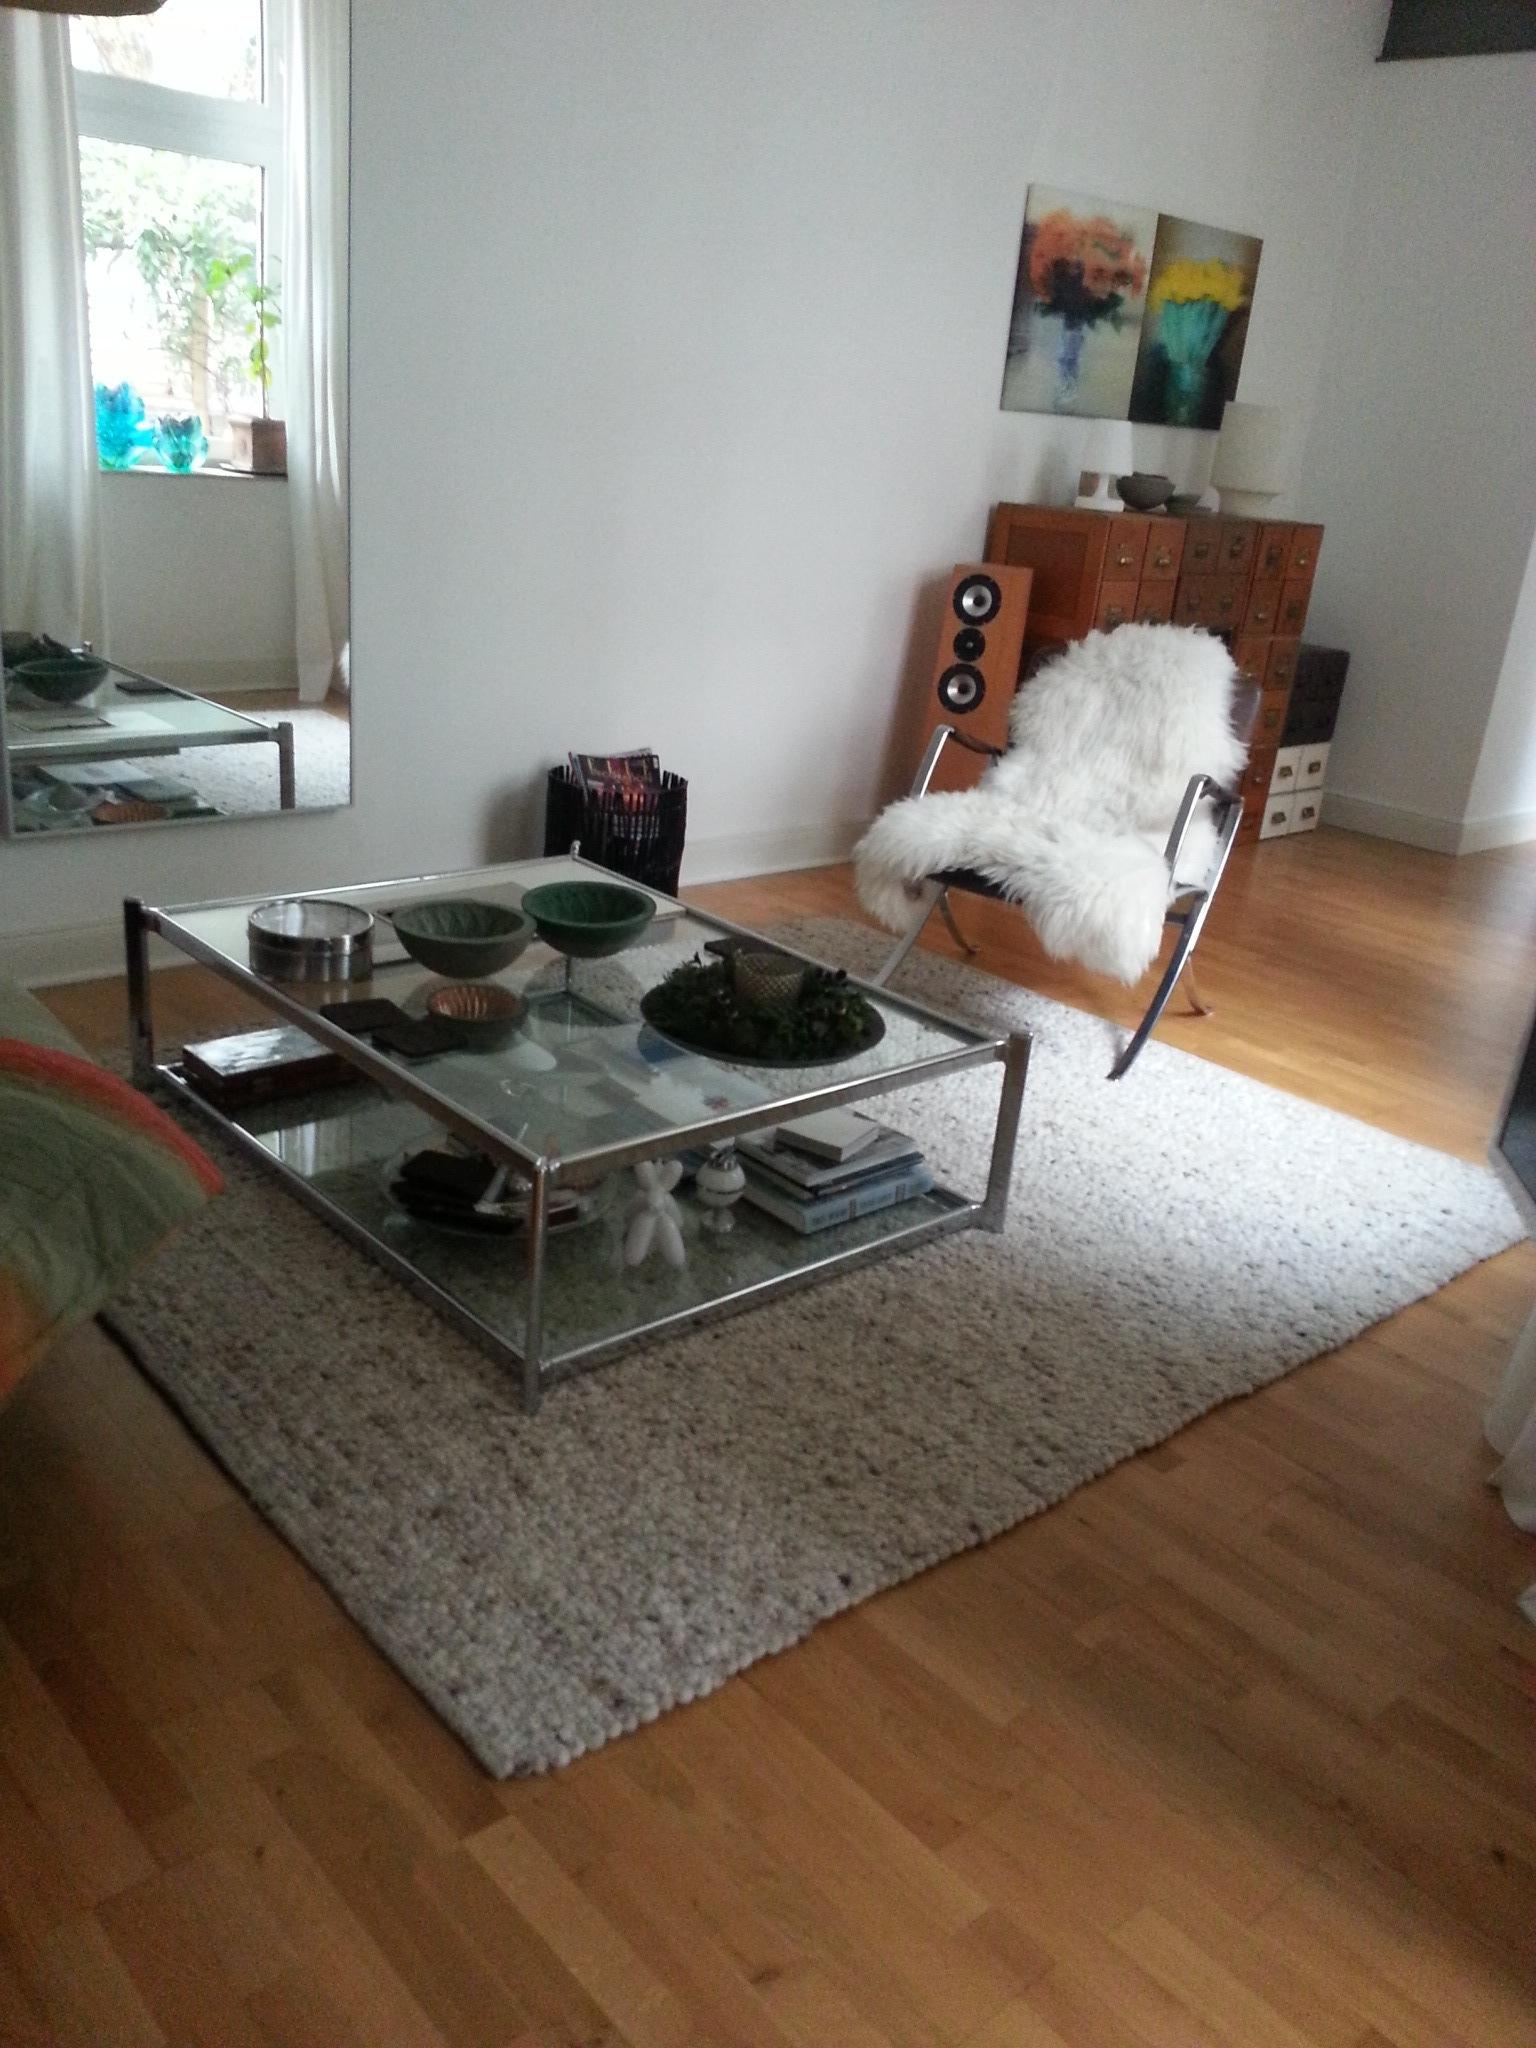 Kuschel-Lese-Sessel #beistelltisch #sessel ©A.Lübben